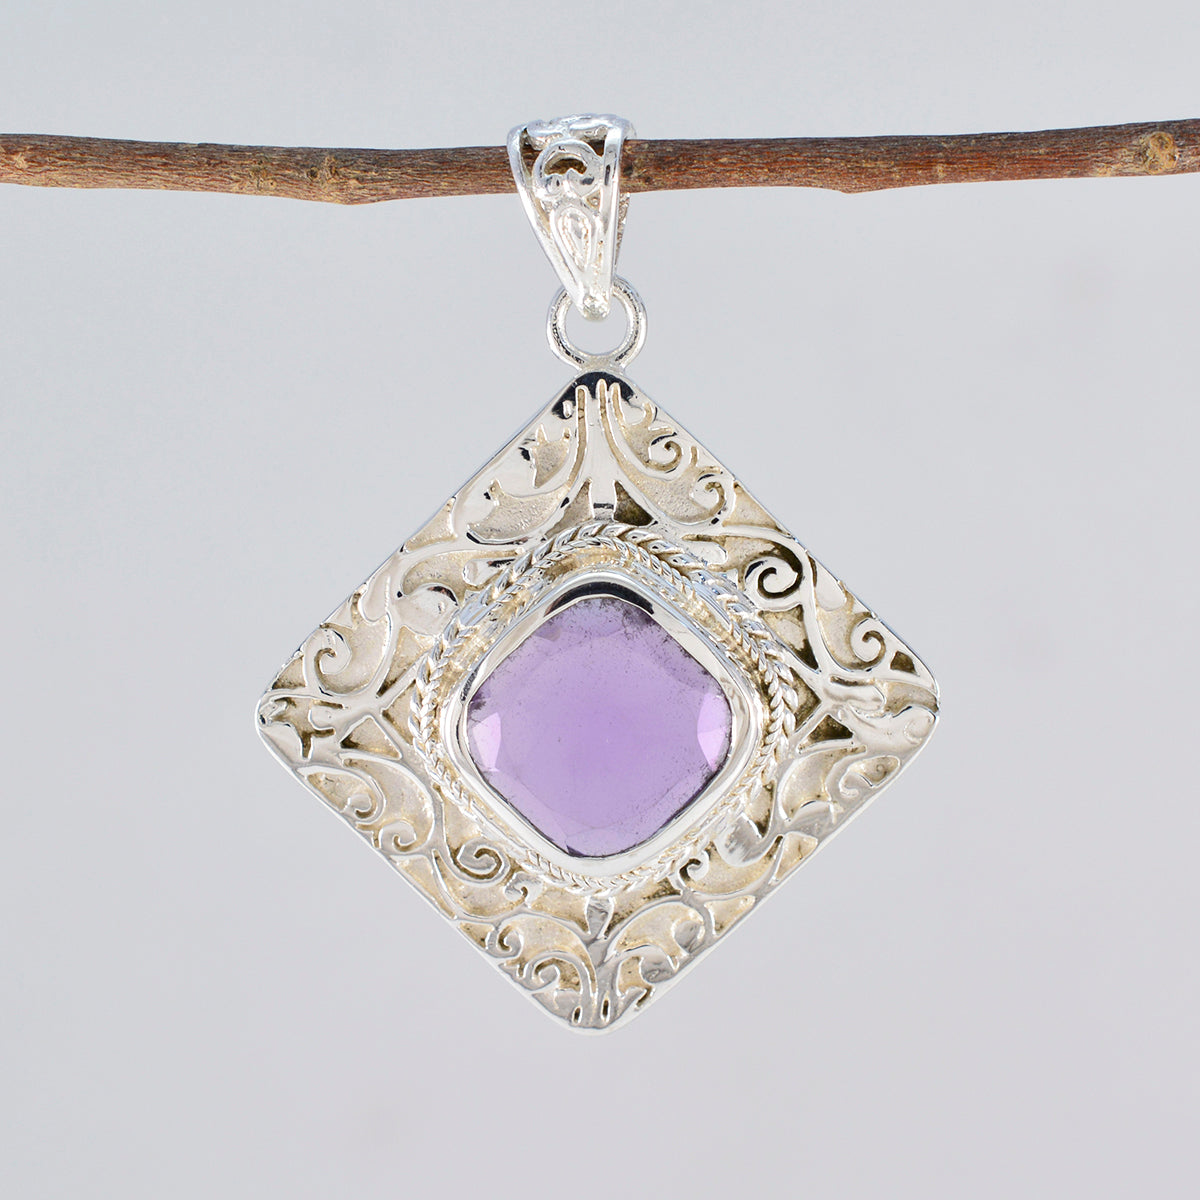 Bonito cojín de piedras preciosas de riyo, amatista púrpura facetada, colgante de plata de ley 997, regalo para cumpleaños